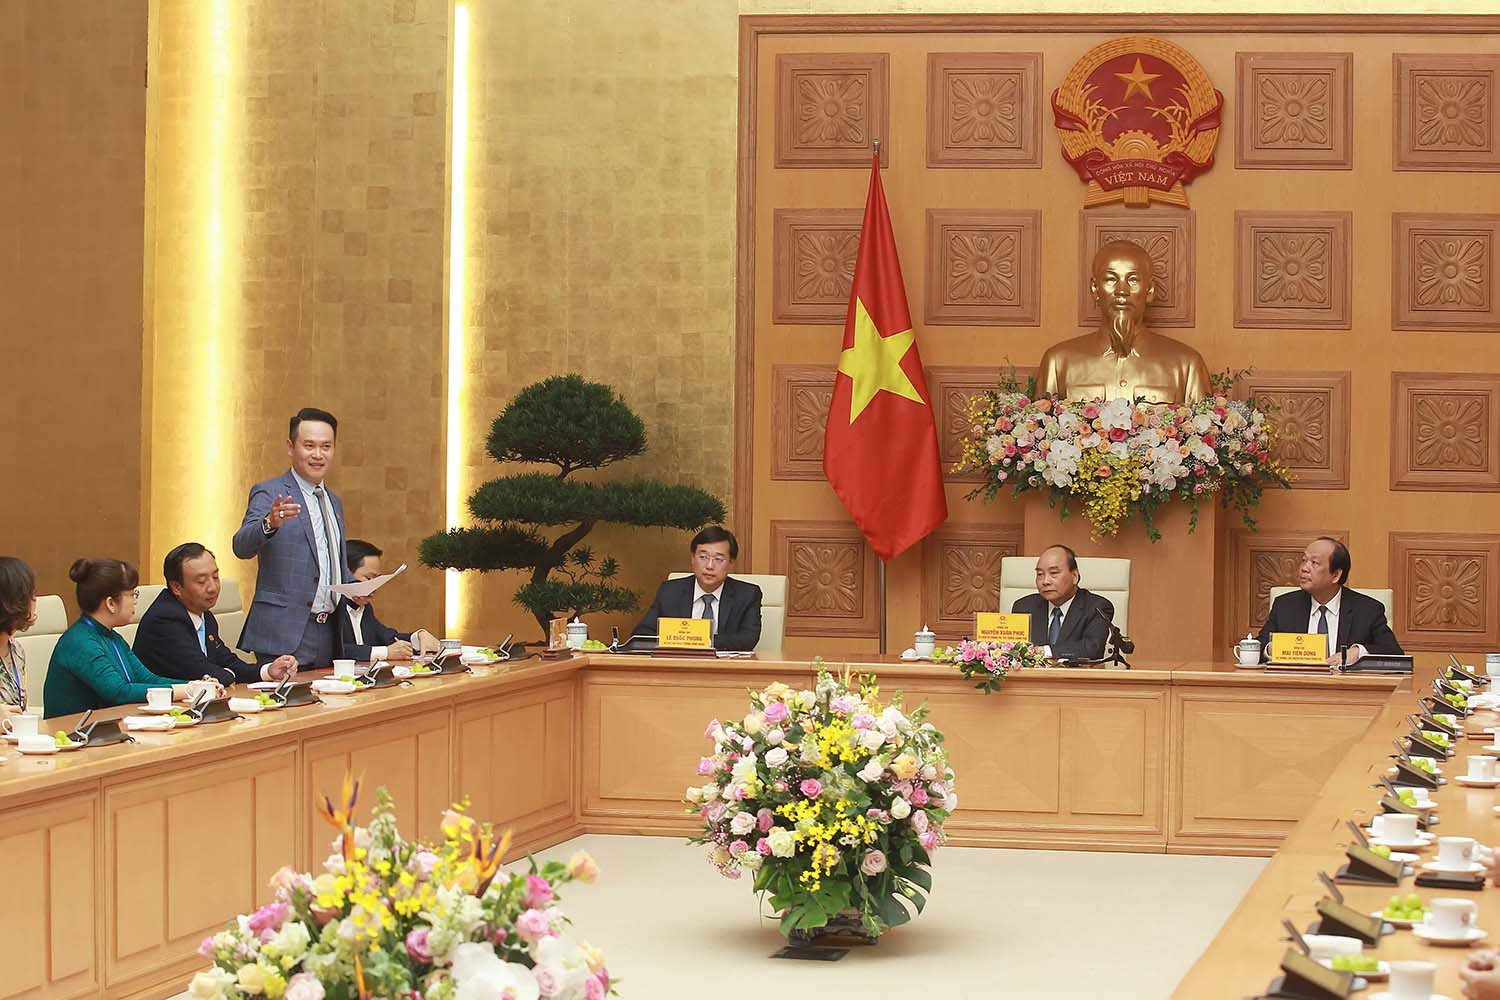 Báo cáo Thủ tướng Chính phủ tại buổi gặp mặt, lãnh đạo Hội doanh nhân trẻ Việt Nam cho biết, trải qua 26 năm hình thành và phát triển, Hội đã có mạng lưới tổ chức tại 63/63 tỉnh, thành phố và hai ngành kinh tế với hơn 10 nghìn hội viên doanh nhân trẻ.